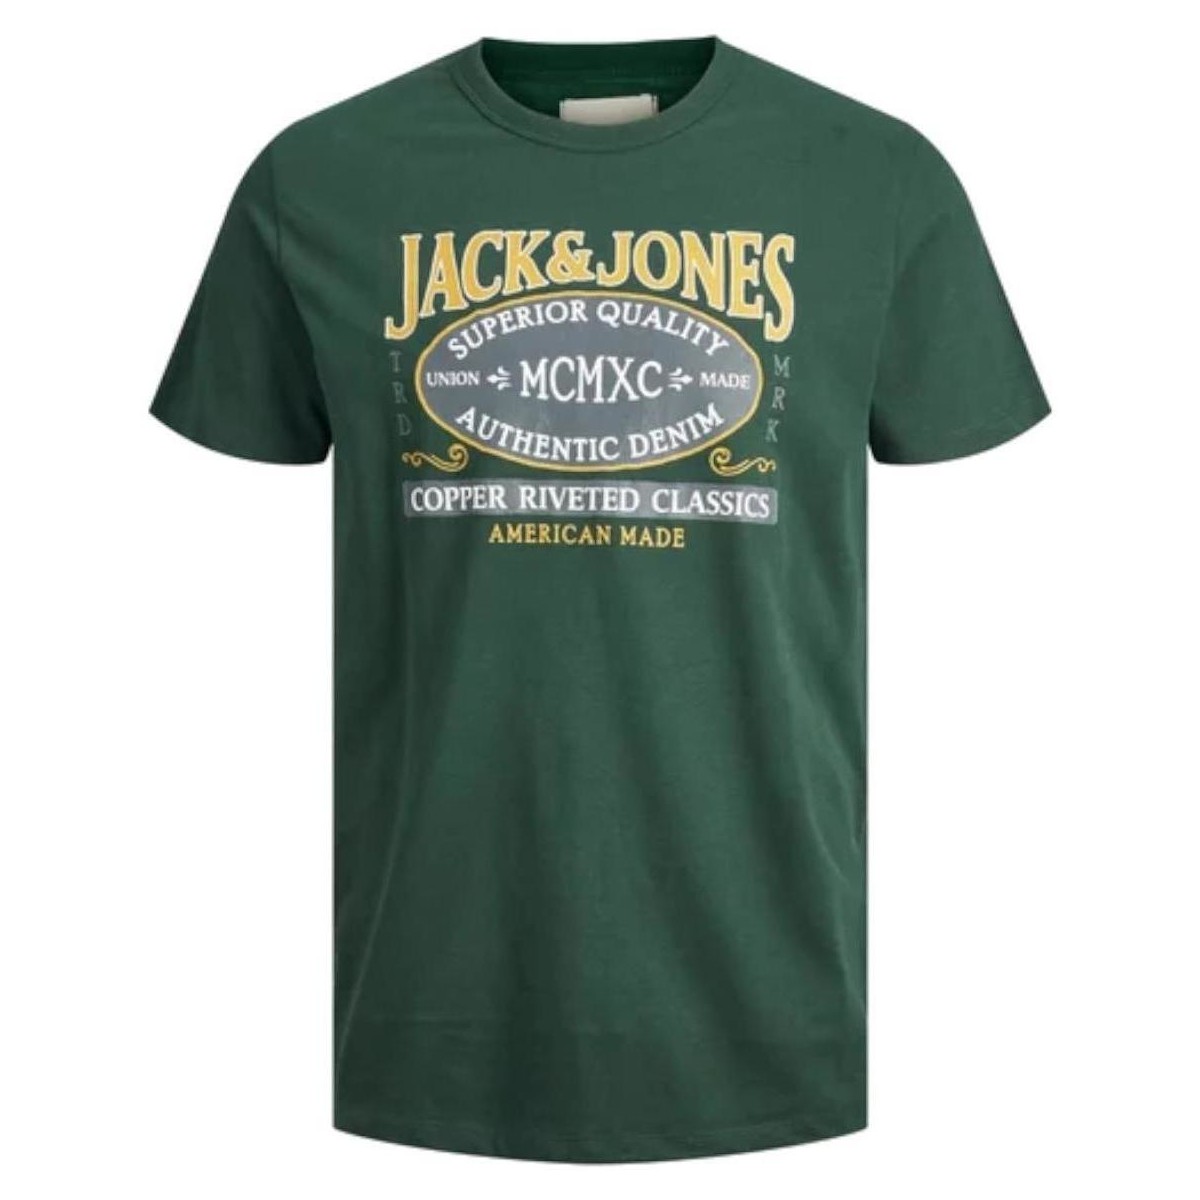 Textil Chlapecké Trička s krátkým rukávem Jack & Jones  Zelená